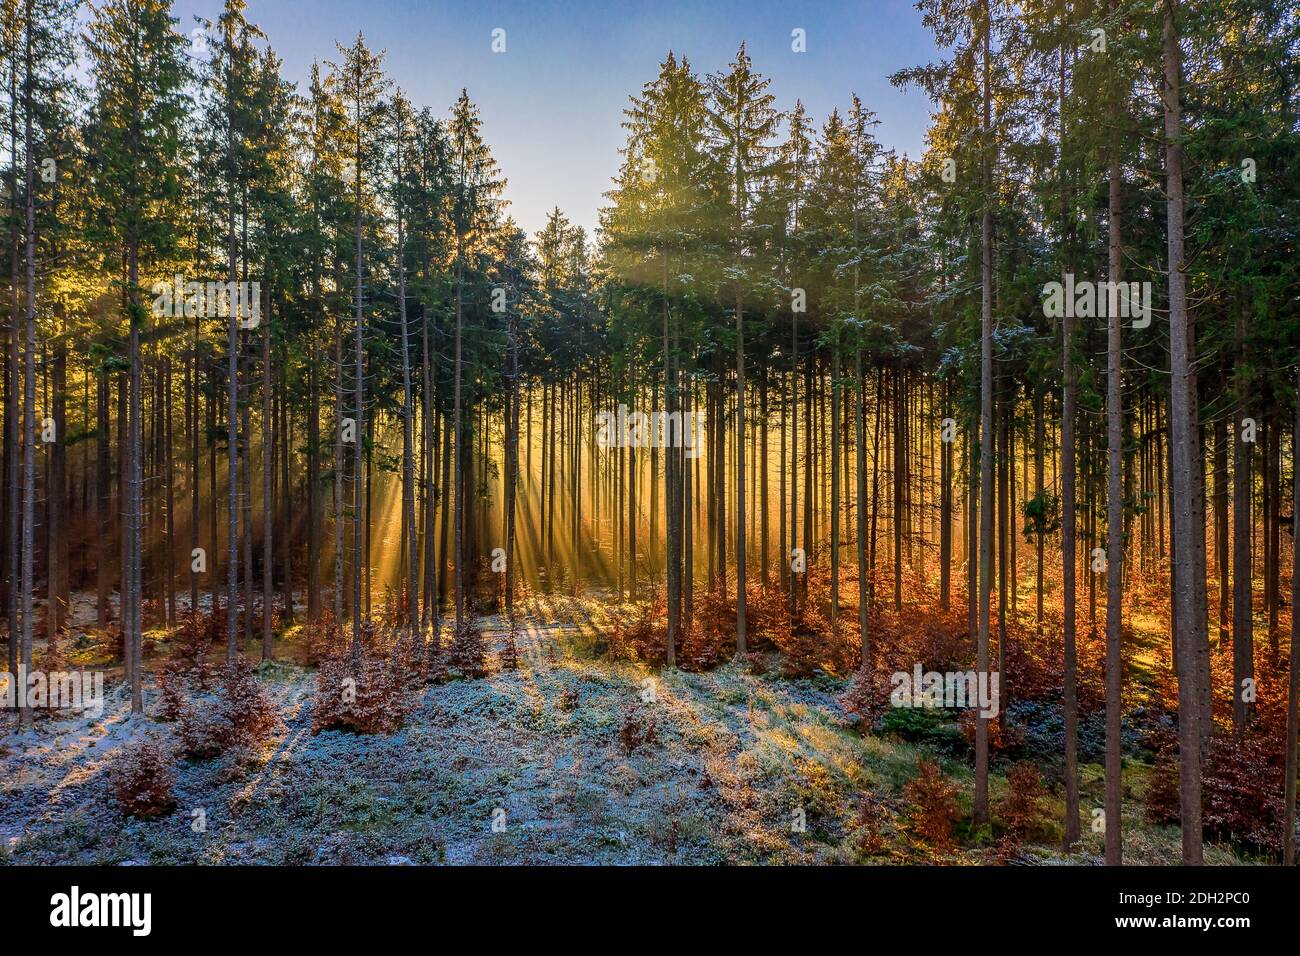 Meravigliosa luce dorata al mattino presto nella foresta. La luce del sole splende attraverso le cime degli alberi, riscaldando il terreno ghiacciato e coperto di neve. Foto Stock